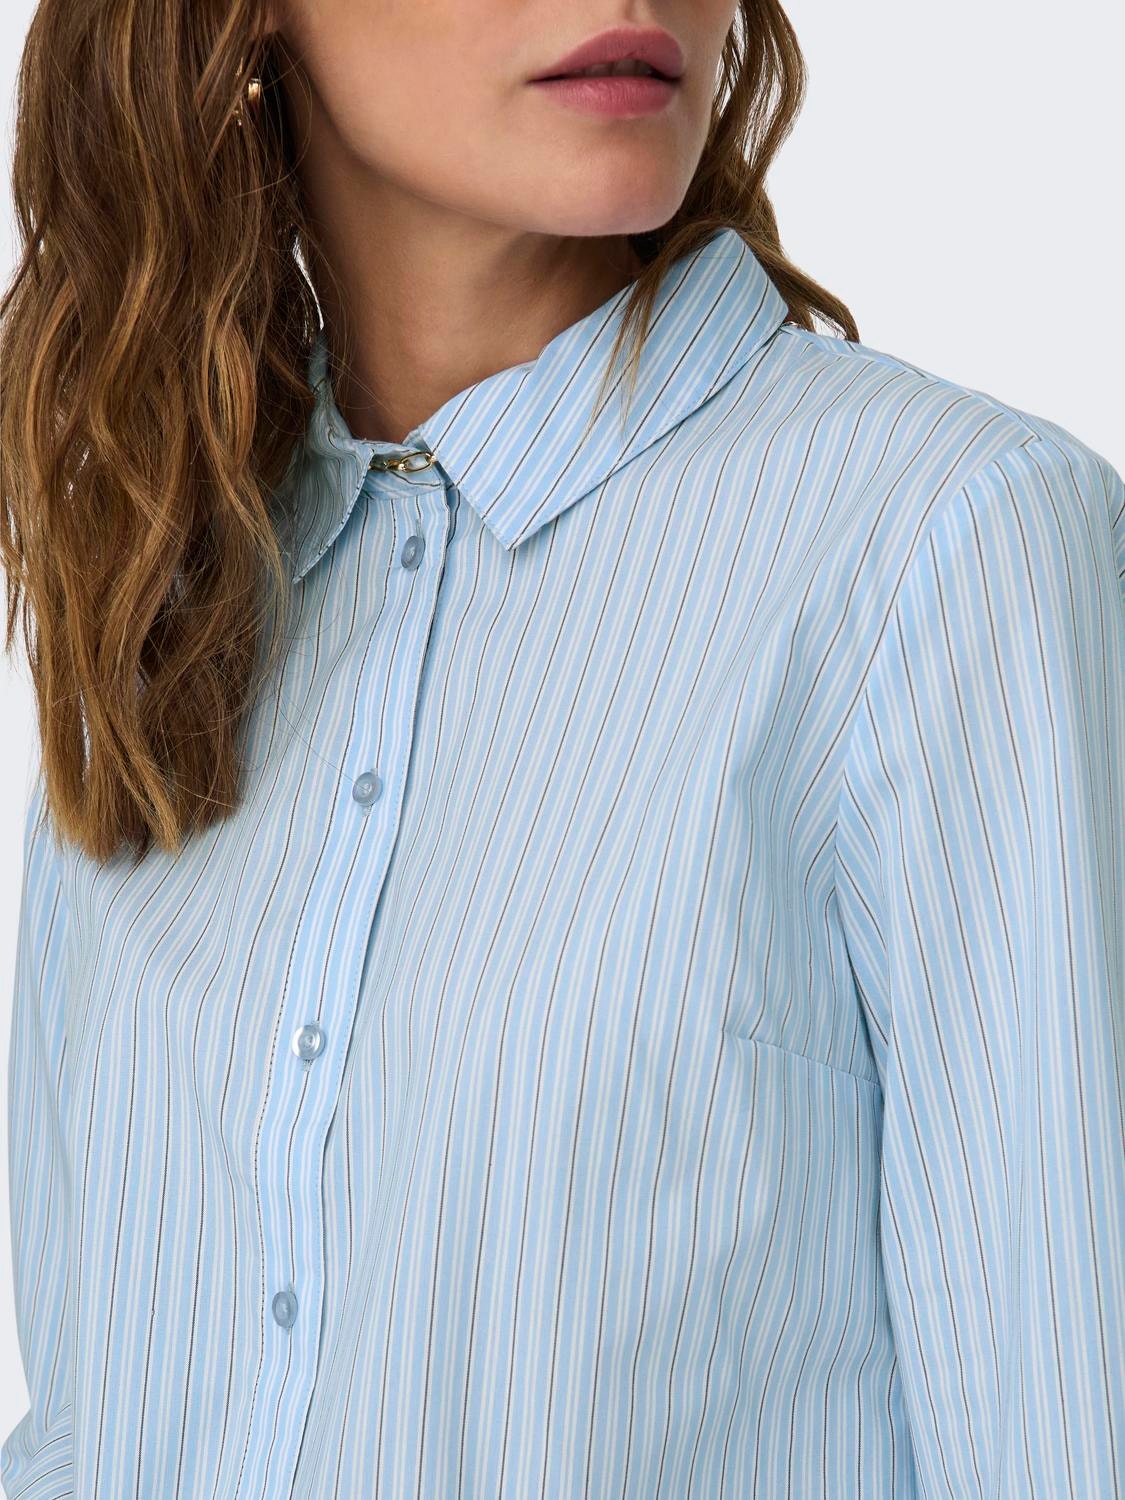 ONLY Normal geschnitten Hemdkragen Ärmelbündchen mit Knopf Schmale Ärmel Hemd -Kentucky Blue - 15149877